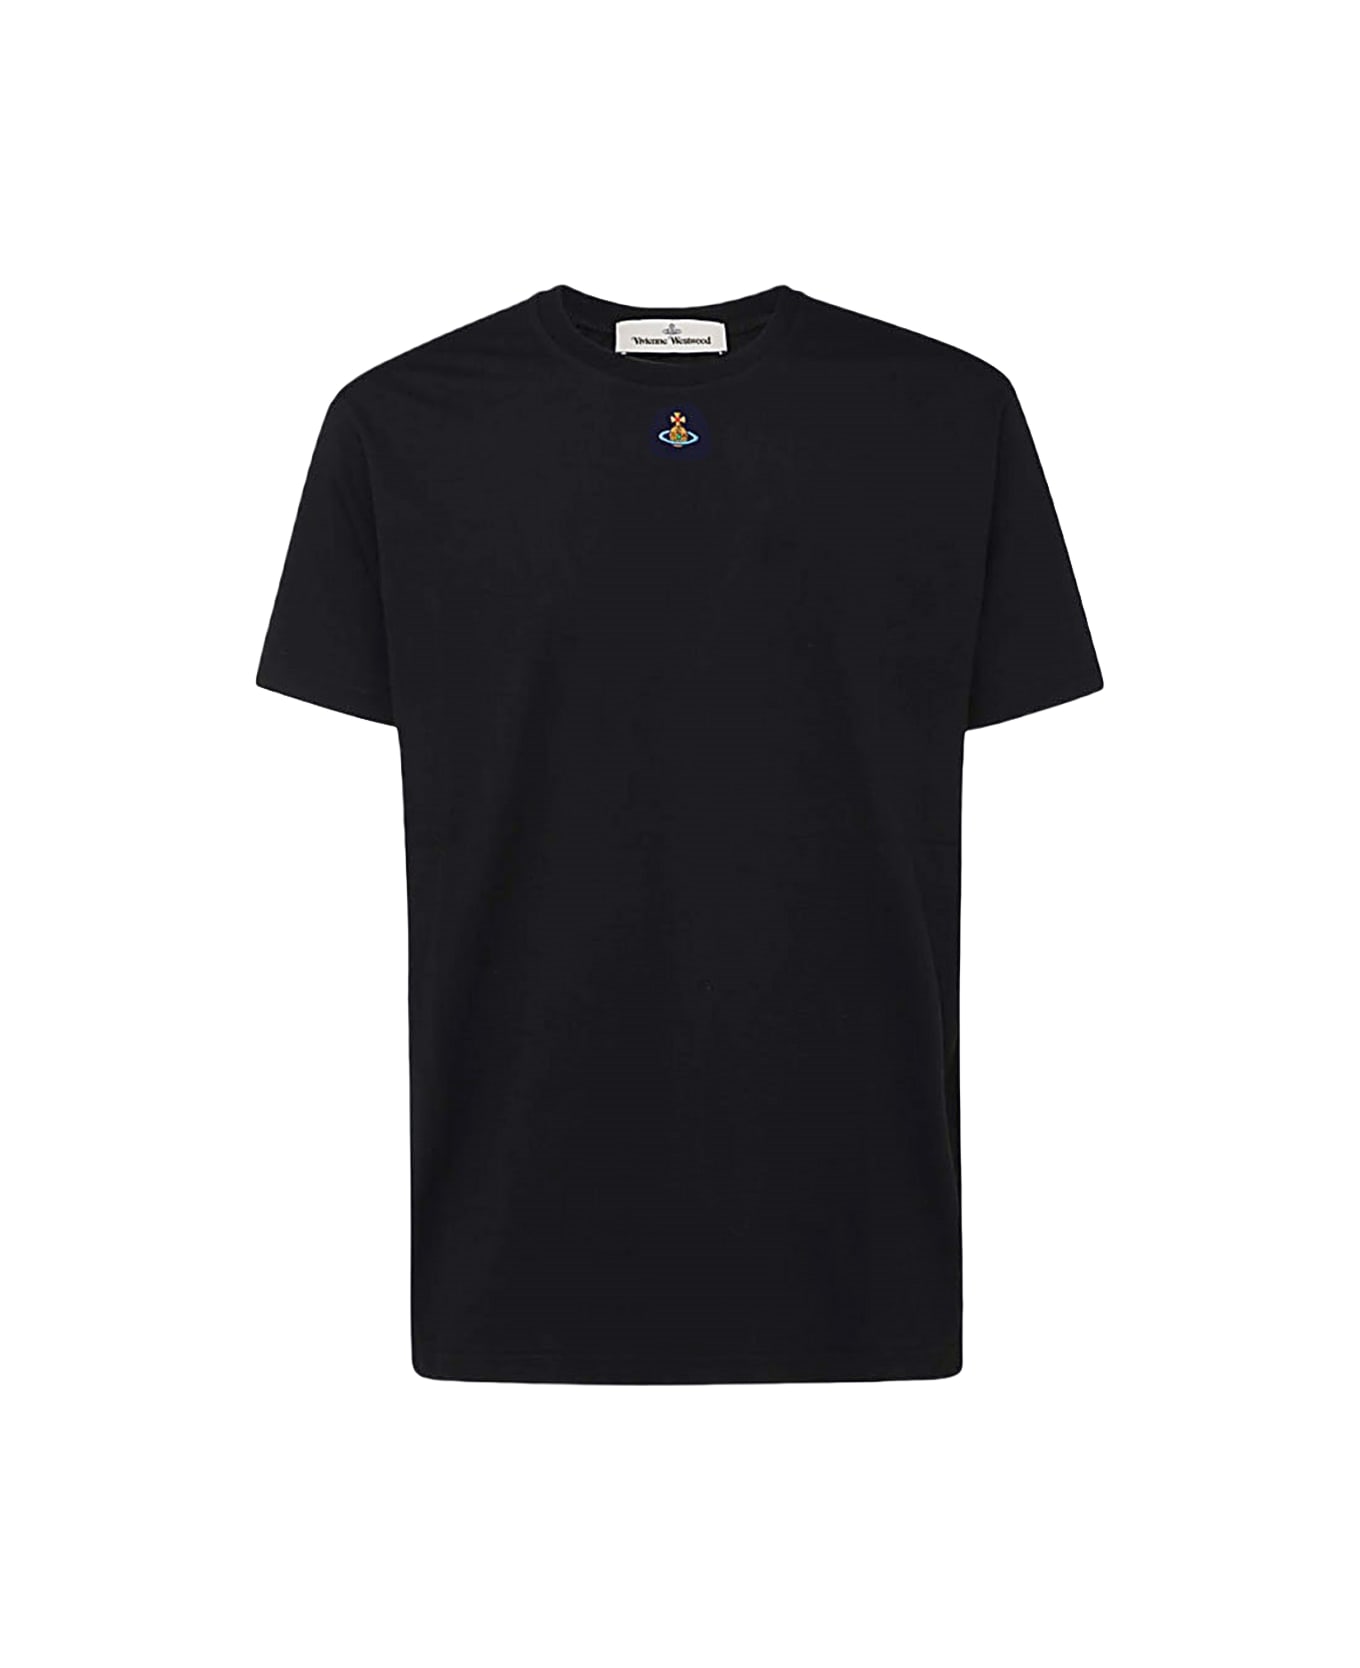 Vivienne Westwood Black Cotton T-shirt - Black シャツ